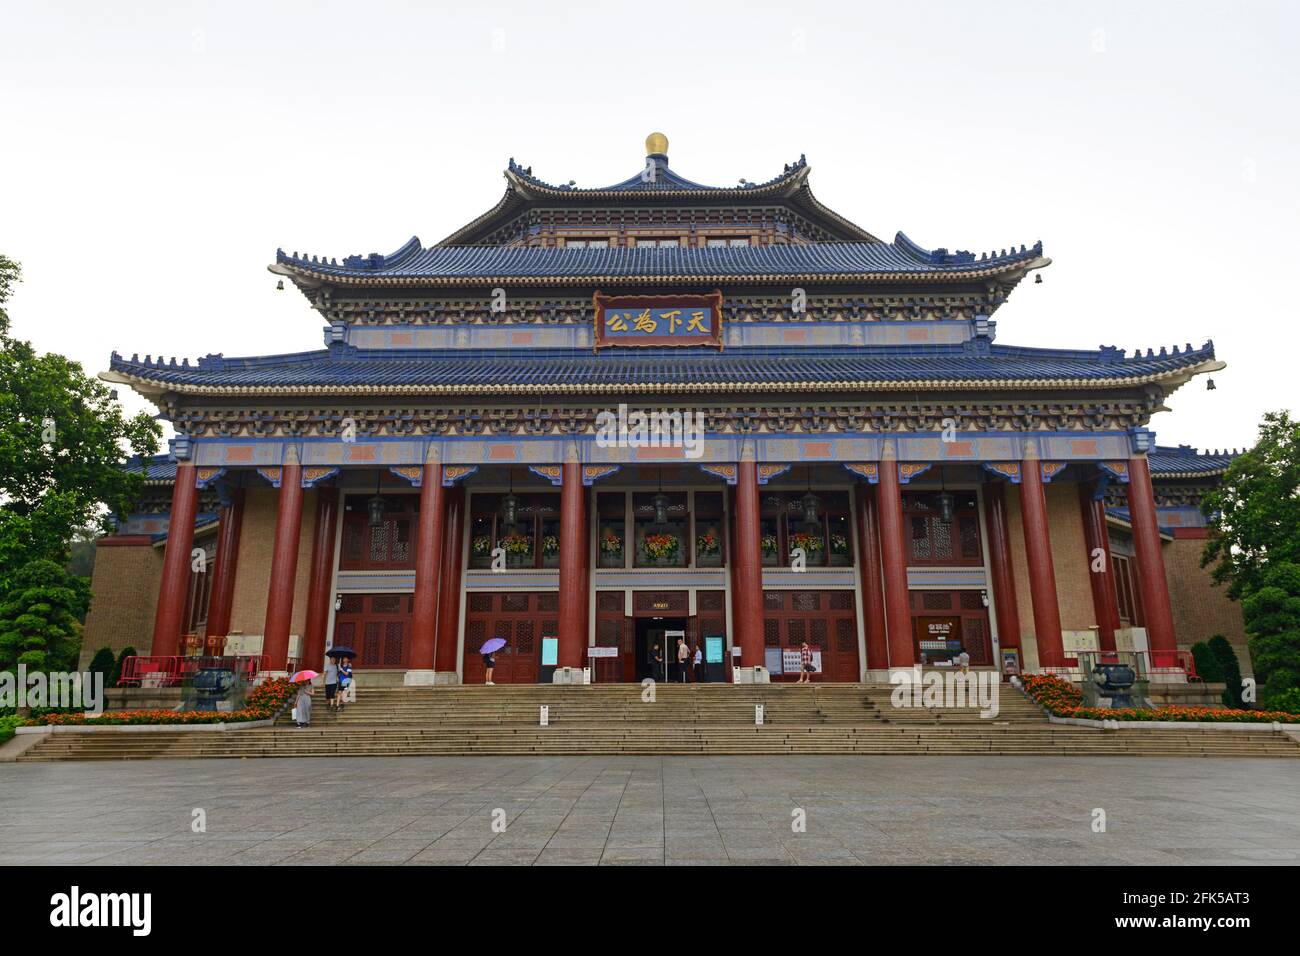 View of the Sun Yatsen Memorial hall in Guangzhou, China Stock Photo